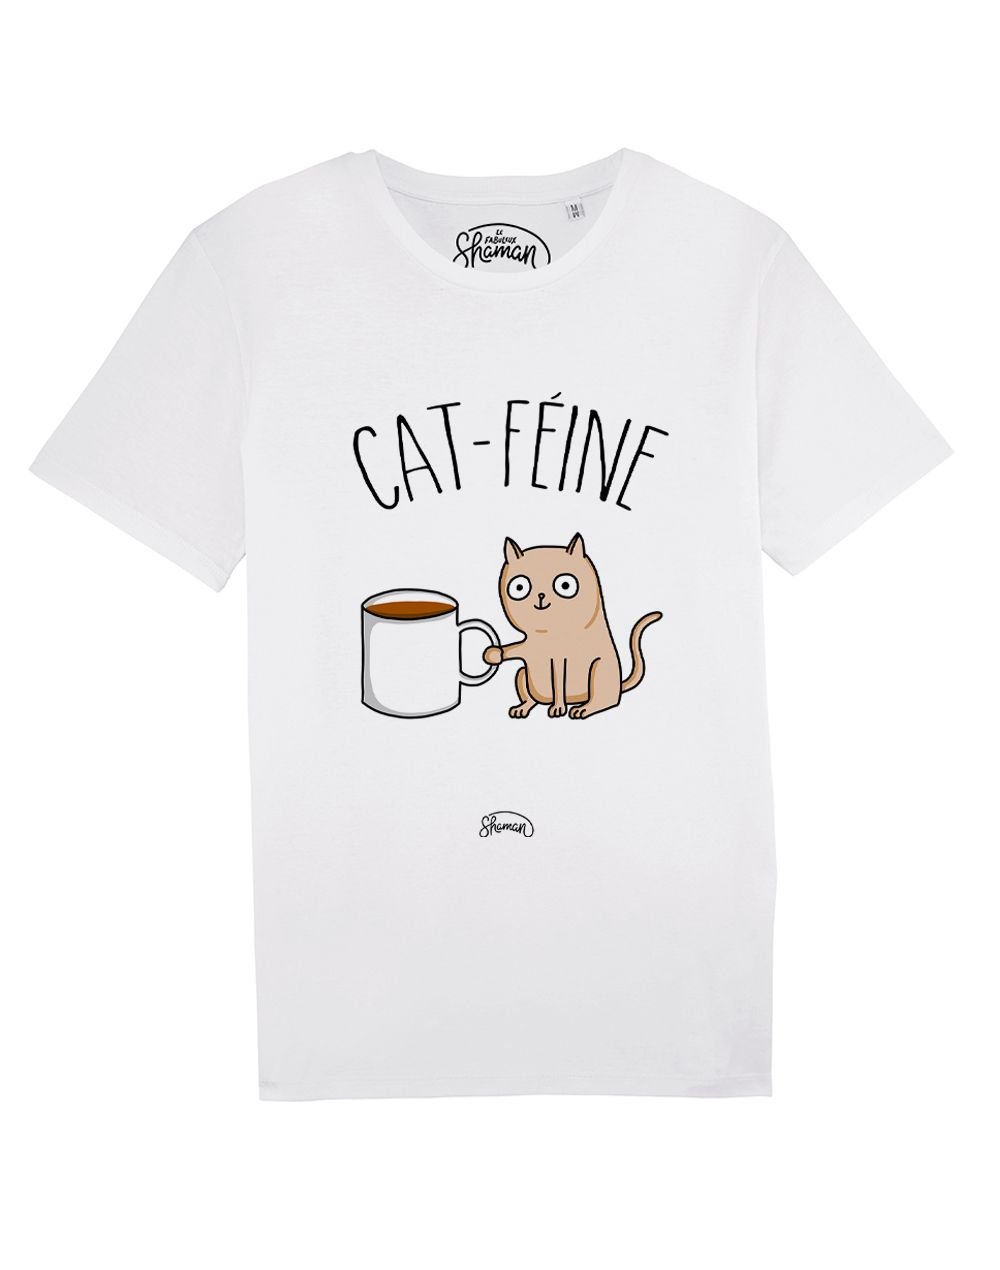 Tee-shirt "Cat féine"